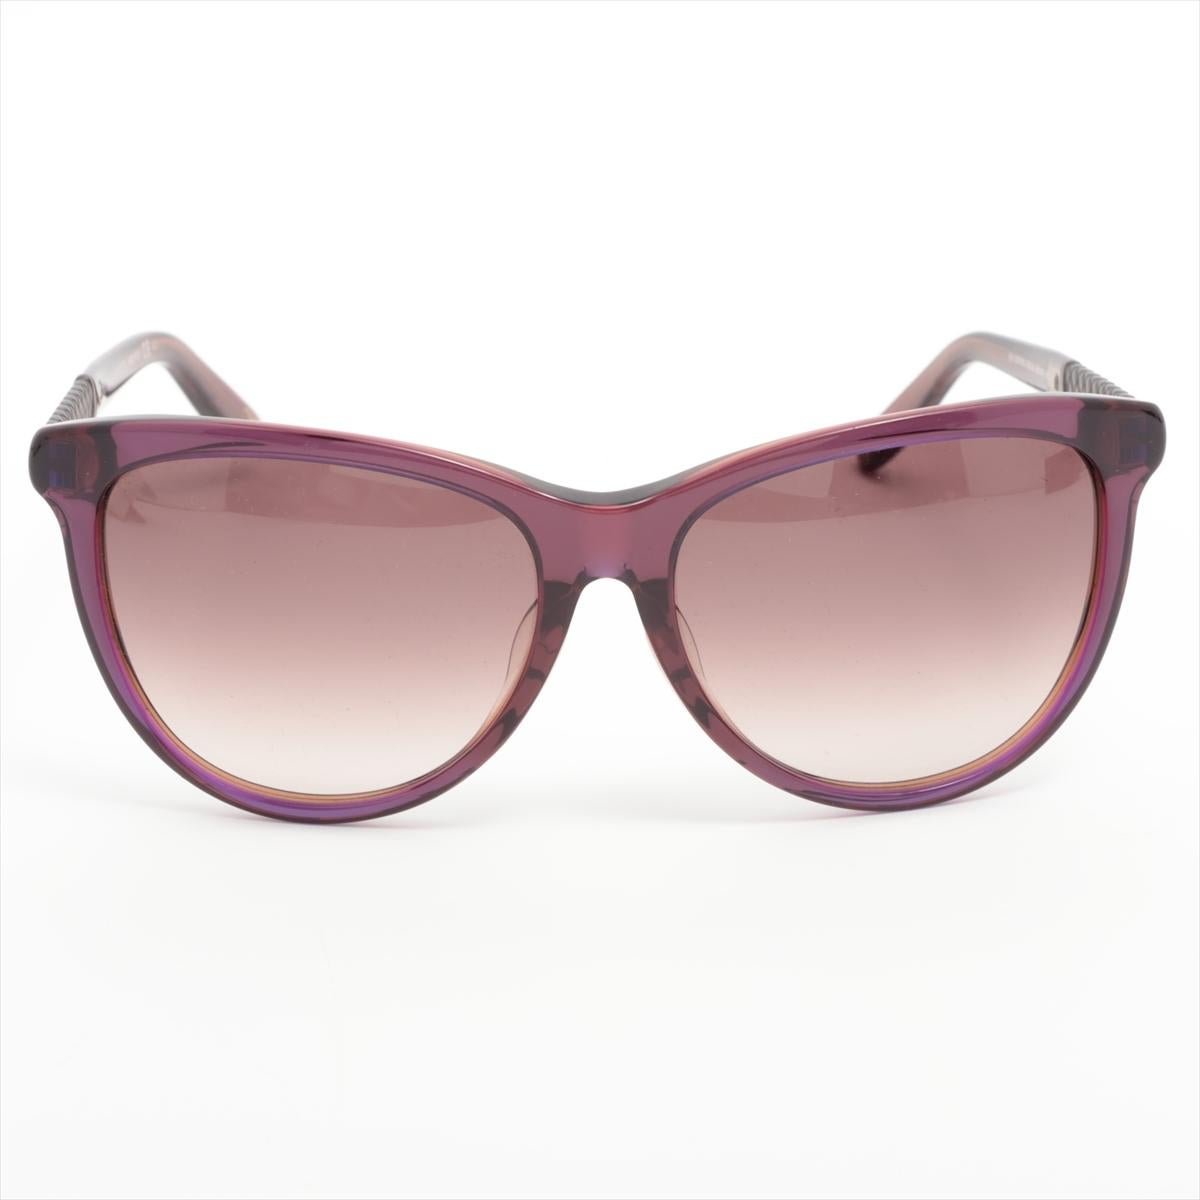 Die Bottega Veneta Kunststoff-Sonnenbrille in Violett ist eine kühne und moderne Brillenwahl, die mühelos modisches Design mit außergewöhnlicher Handwerkskunst verbindet. Der violette Farbton des aus hochwertigem Kunststoff gefertigten Rahmens